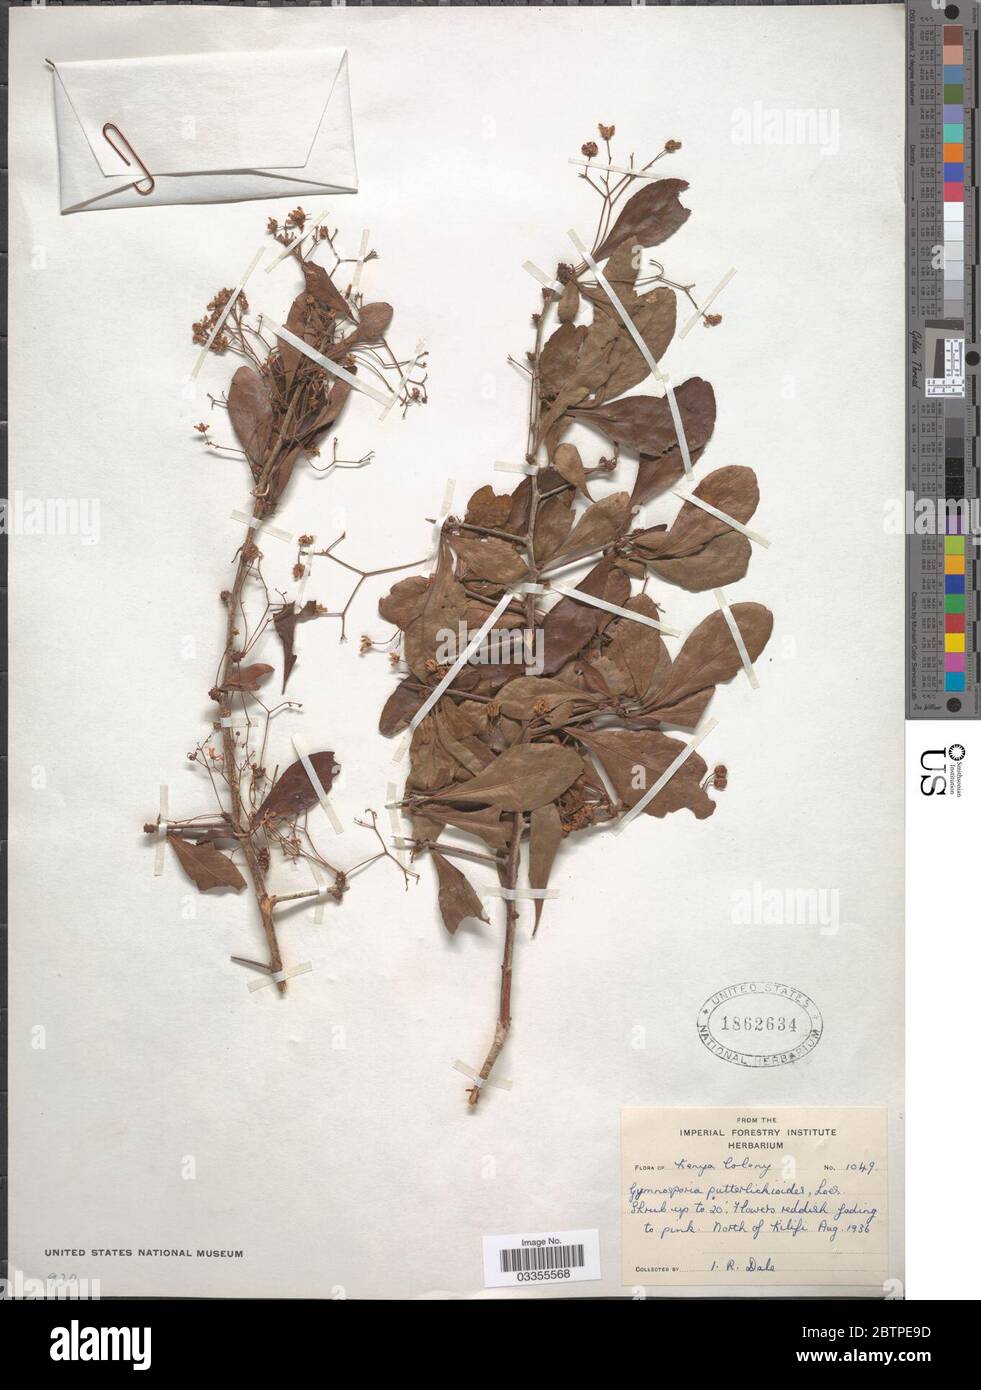 Gymnosporia putterlickioides Loes. Stock Photo